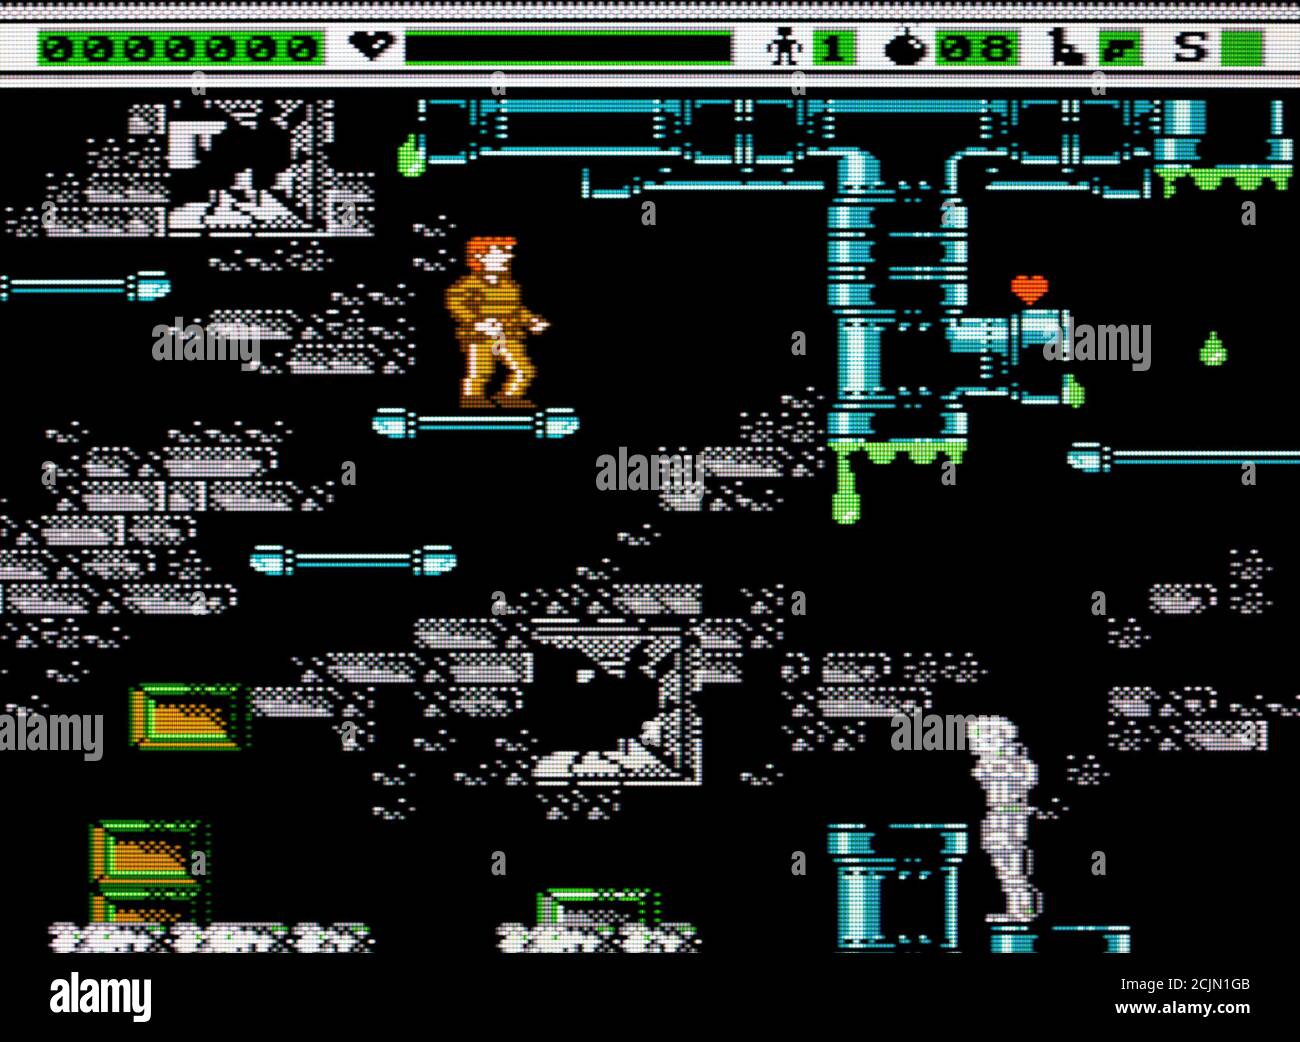 Der Terminator - Nintendo Entertainment System - NES Videogame - Nur für redaktionelle Zwecke Stockfoto